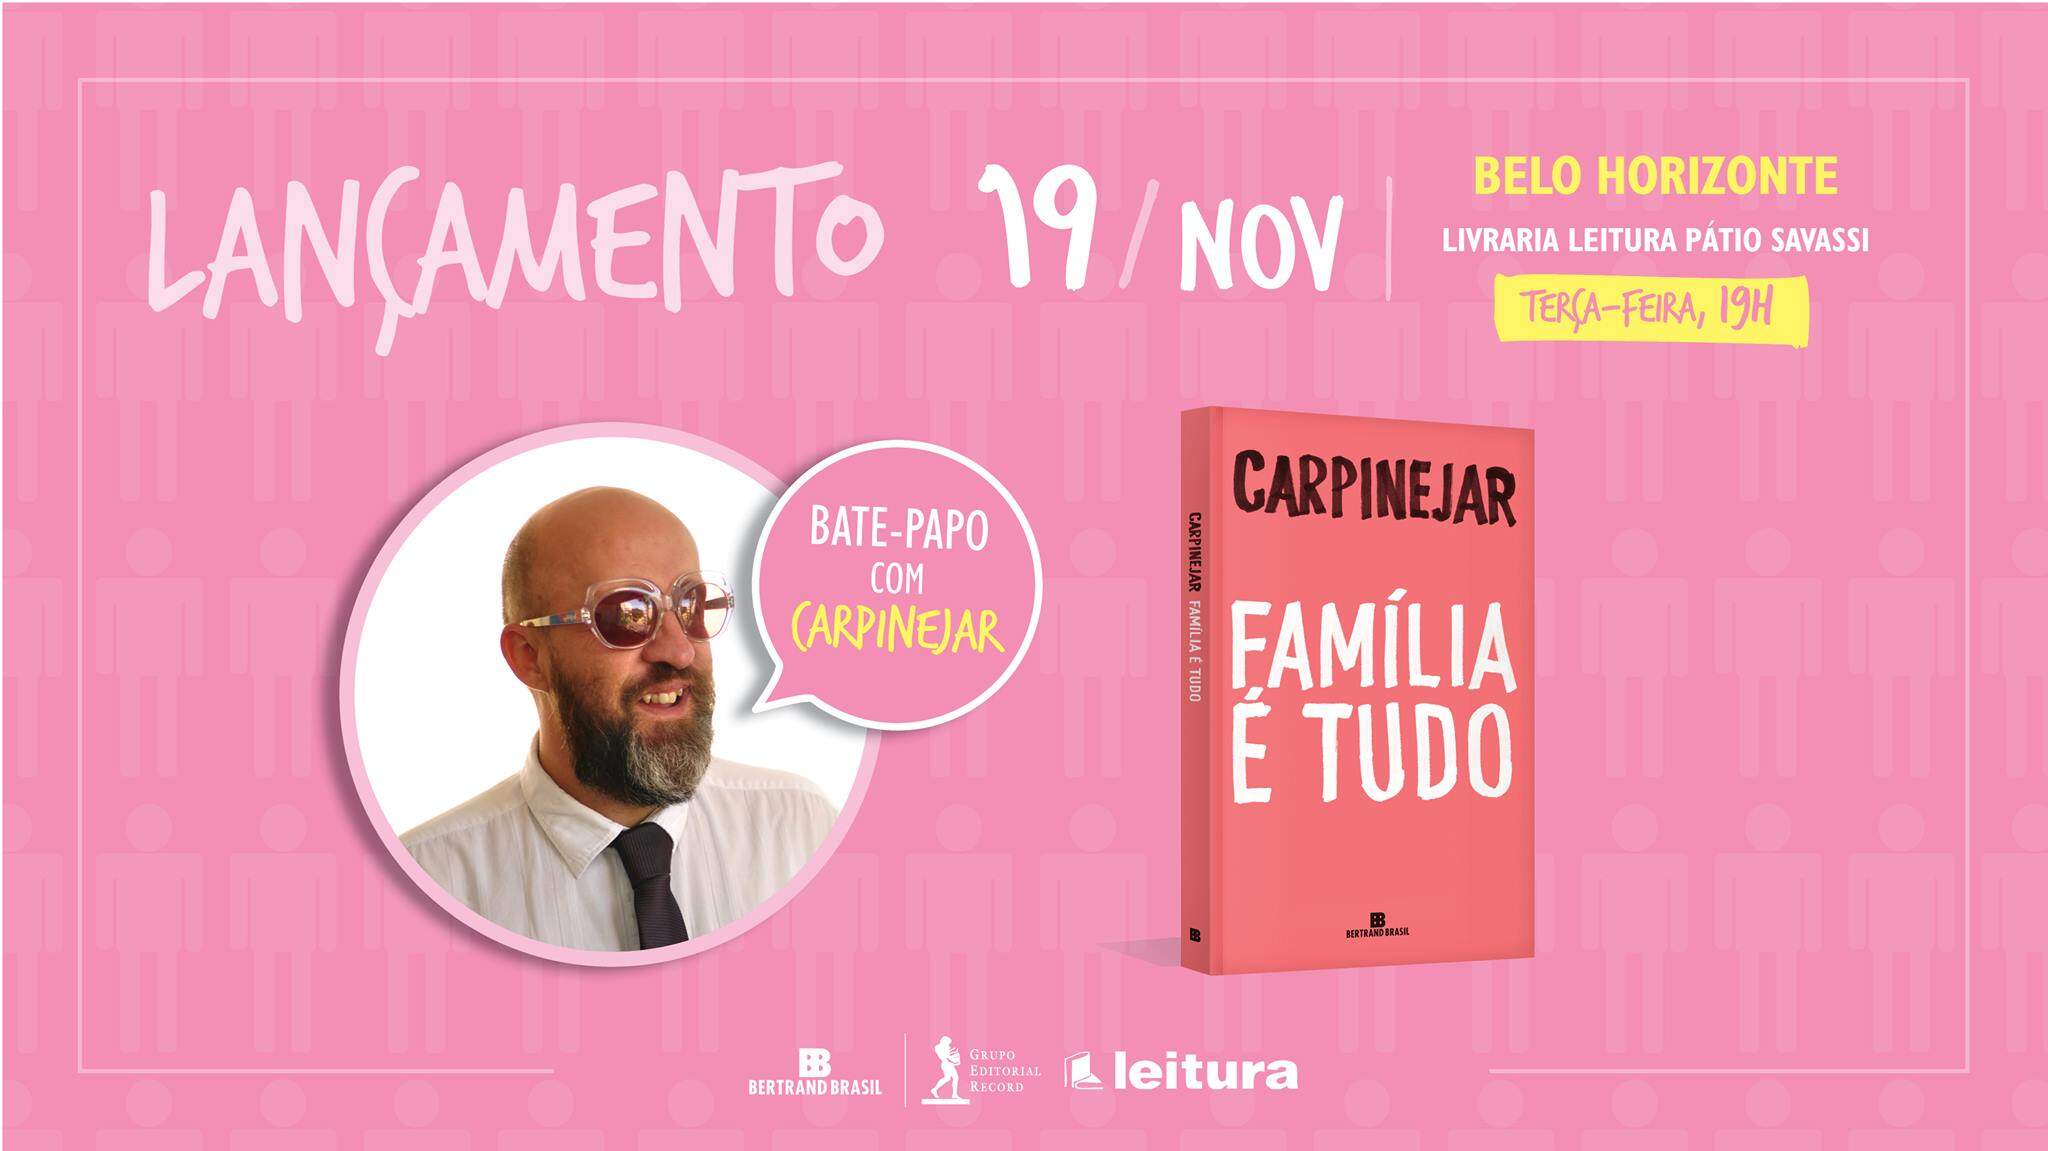 Lançamento do Livro: "Família é tudo" de Fabrício Carpinejar